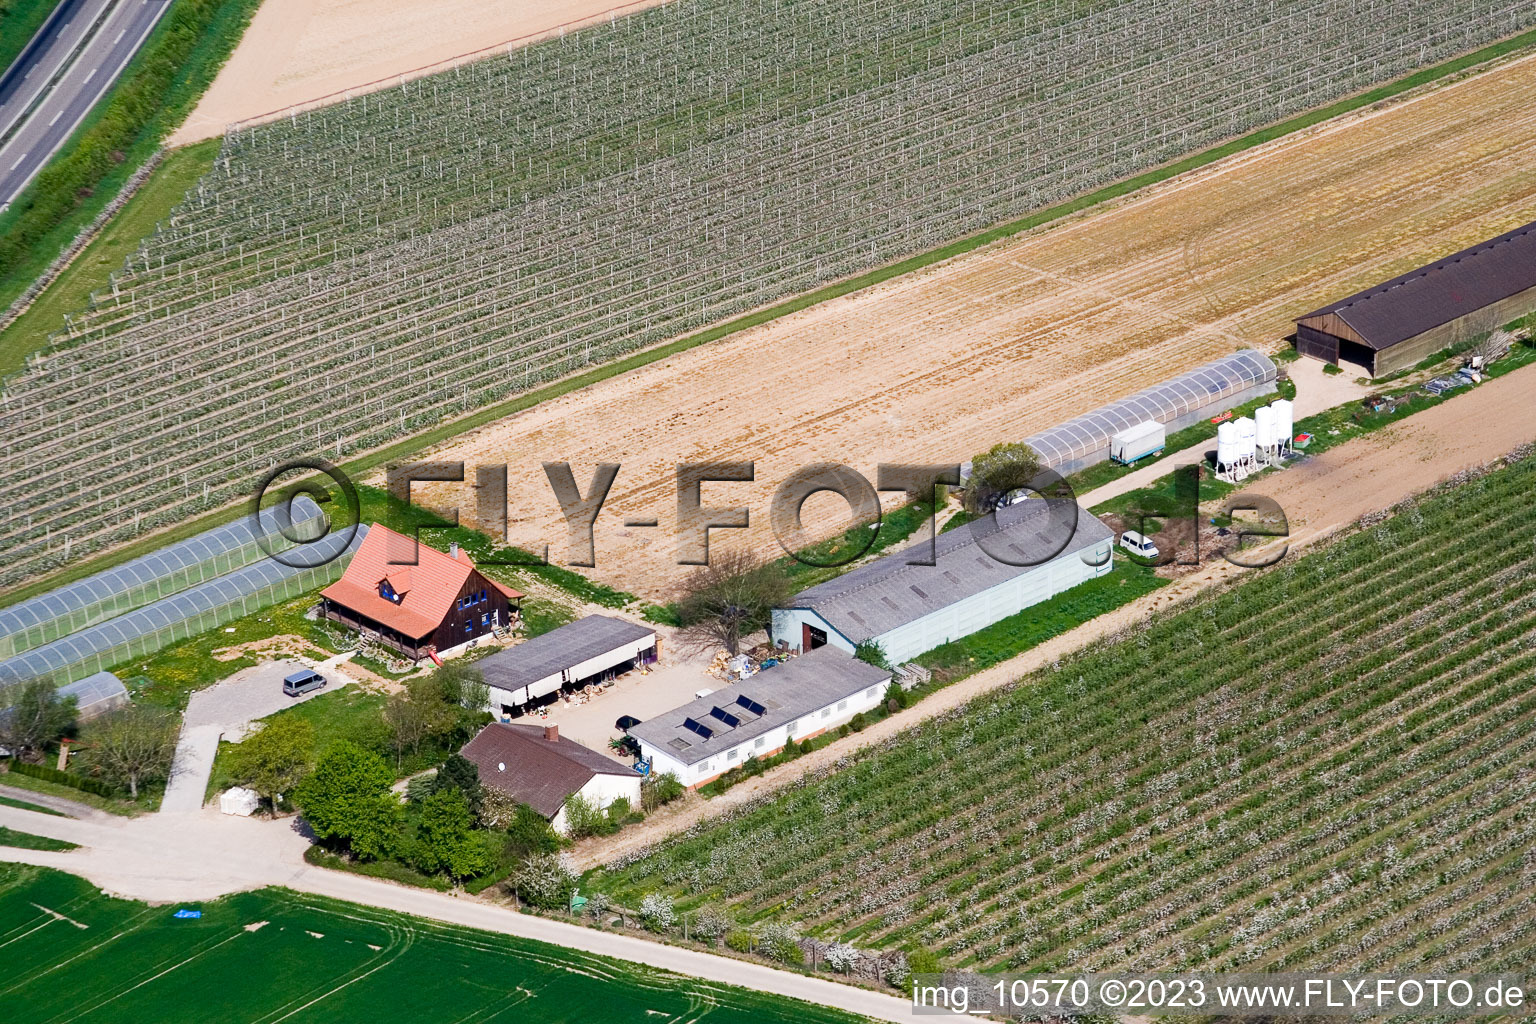 Ferme fruitière Zapf à Kandel dans le département Rhénanie-Palatinat, Allemagne hors des airs